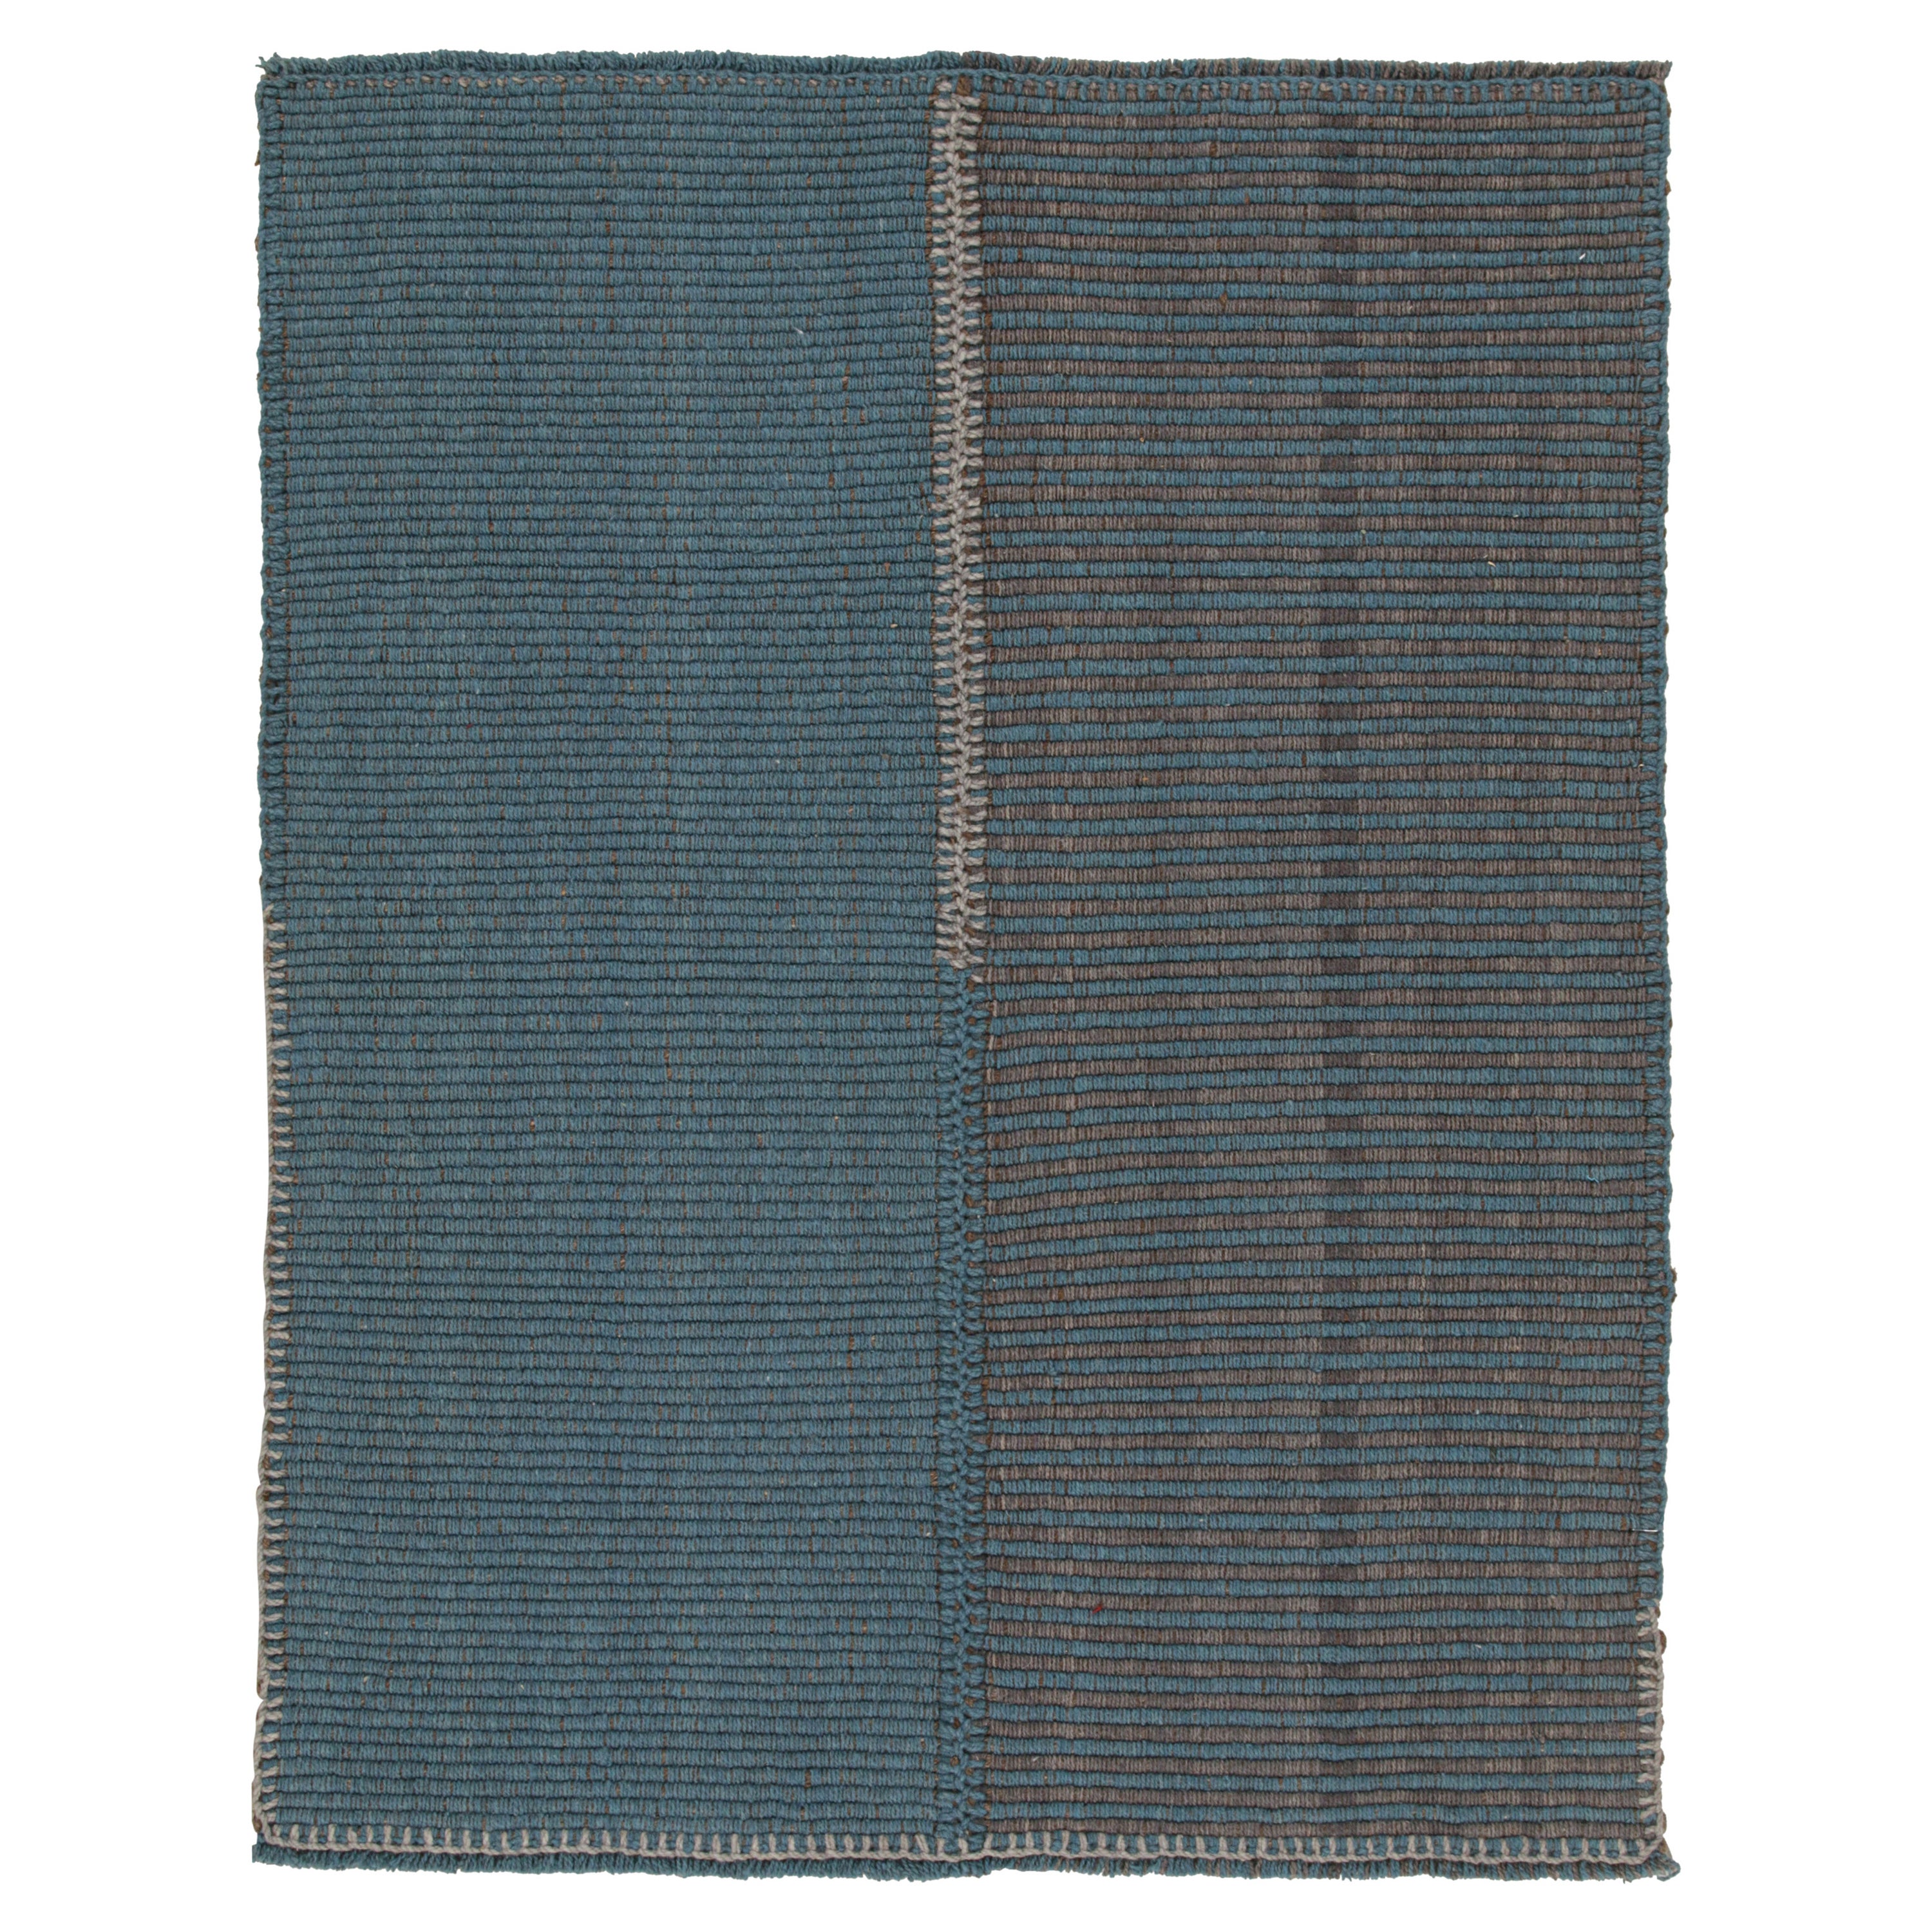 Rug & Kilim's Contemporary Kilim in Blue and Gray Stripes with Brown Accents (Kilim contemporain à rayures bleues et grises avec des accents bruns) en vente